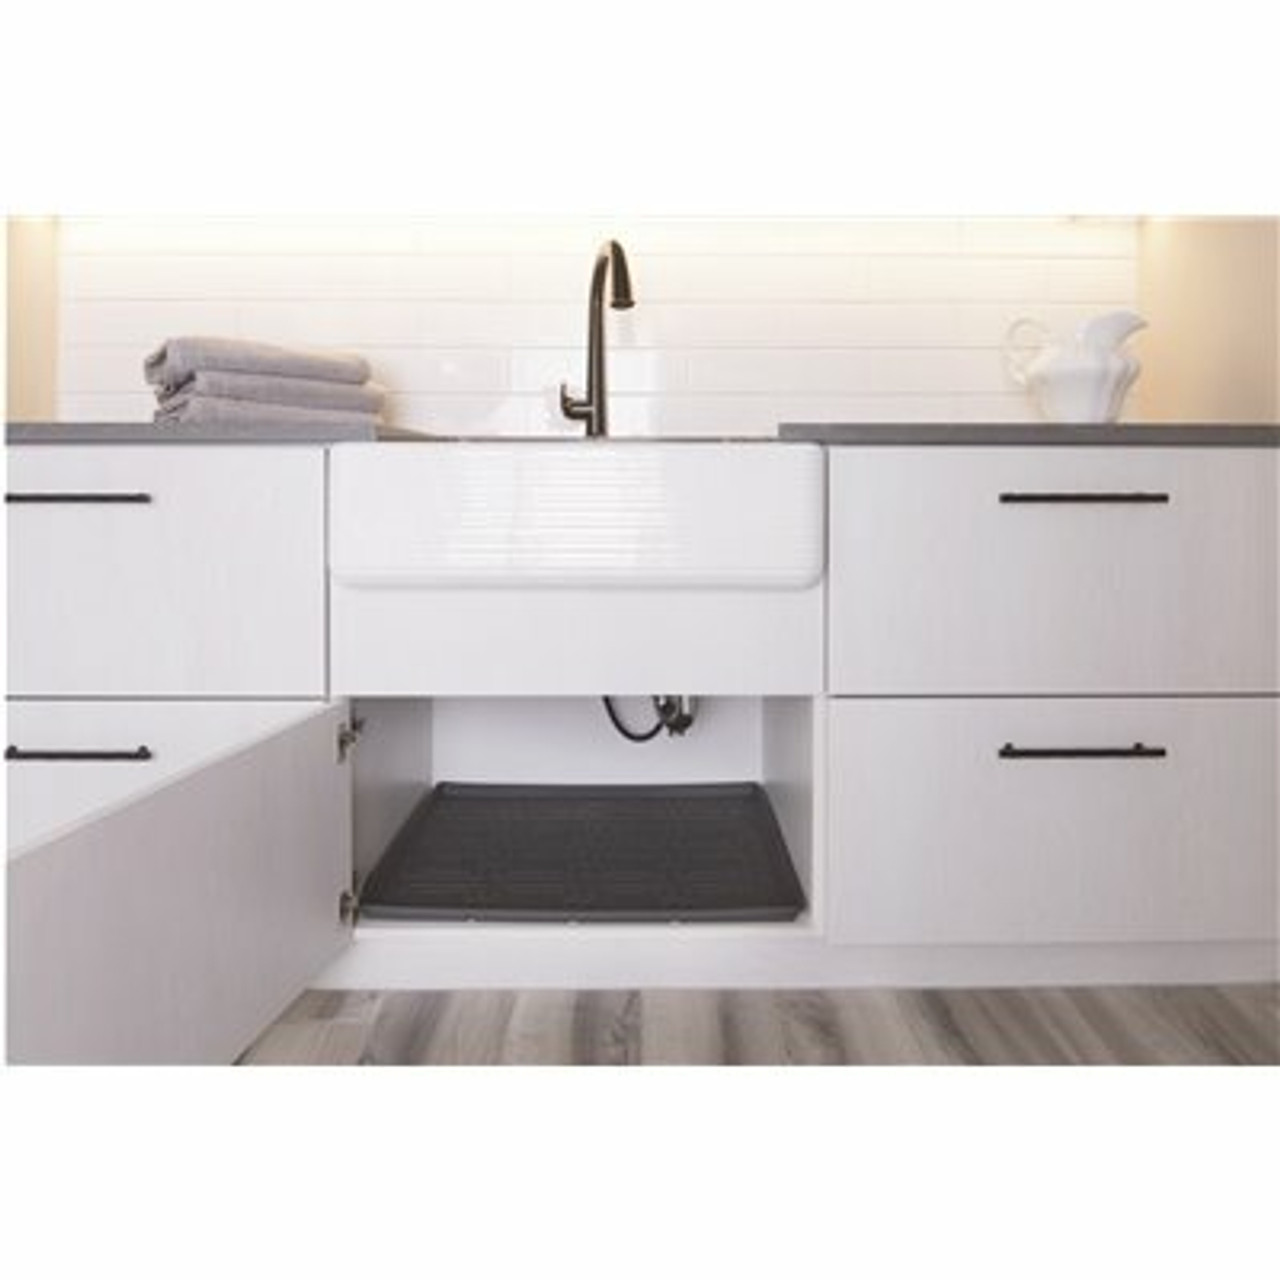 Xtreme Mats 37 In. X 22 In. Grey Kitchen Depth Under Sink Cabinet Mat Drip Tray Shelf Liner